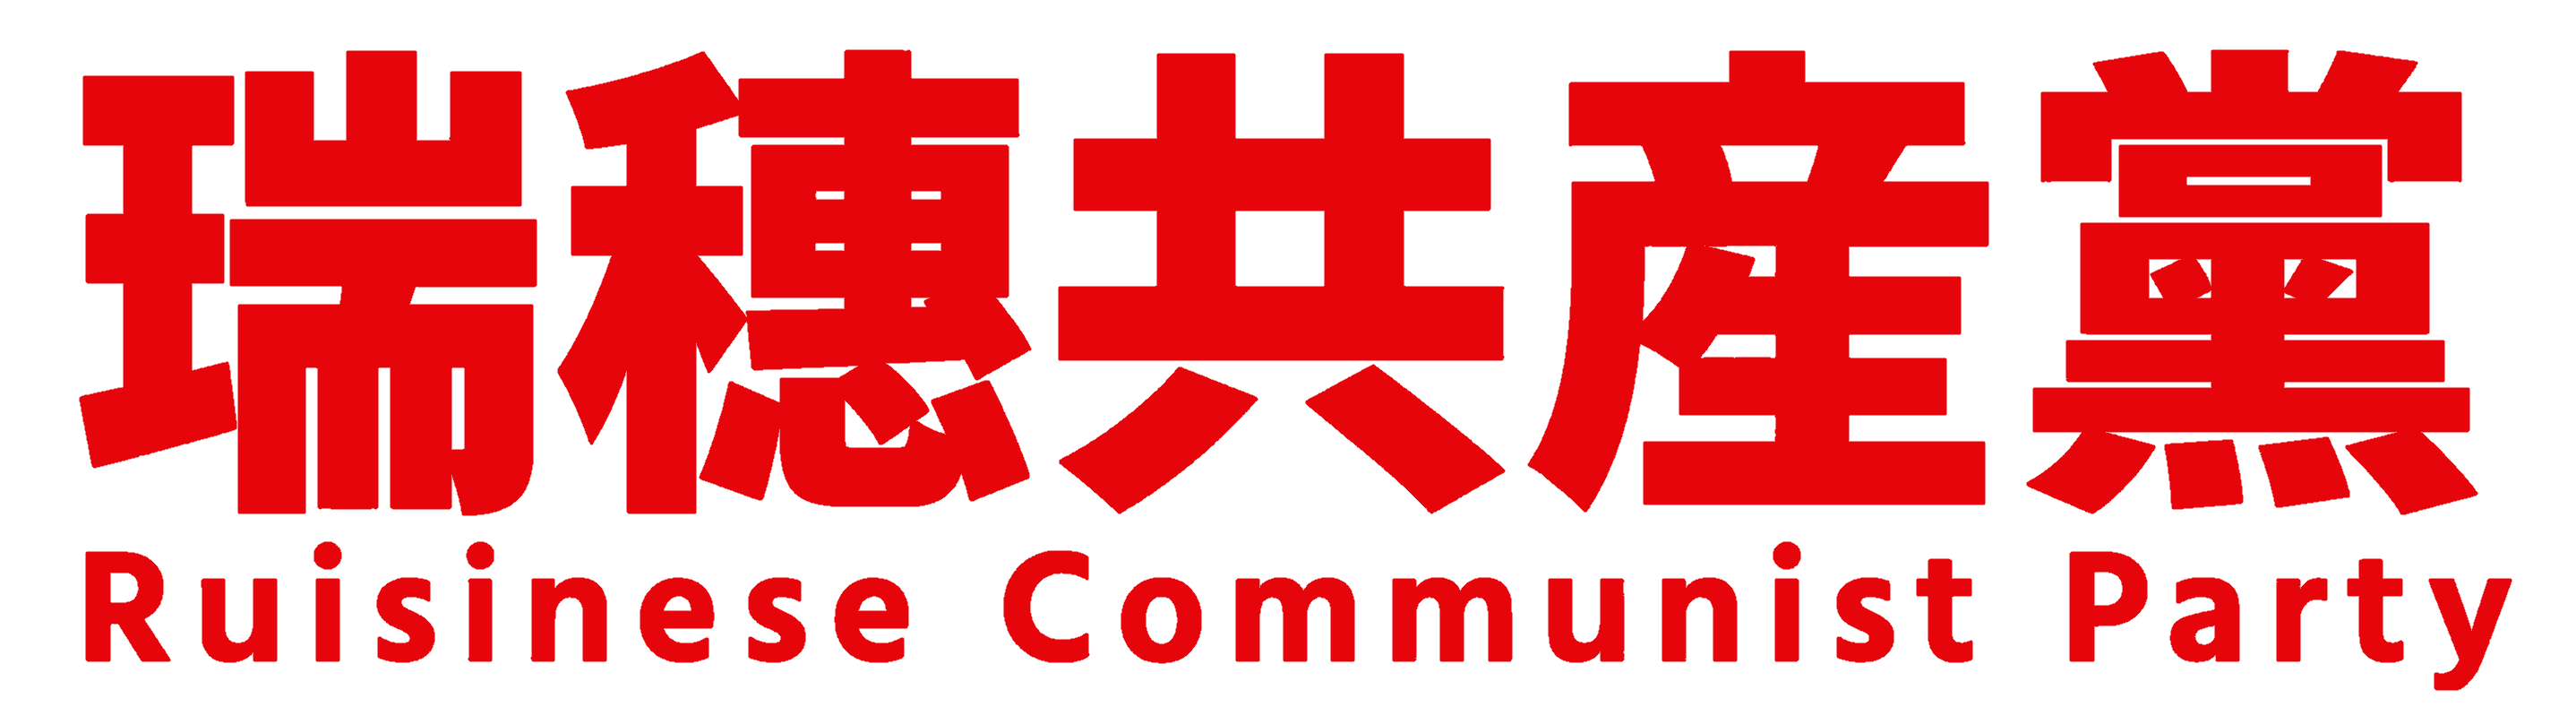 RCP logo.png